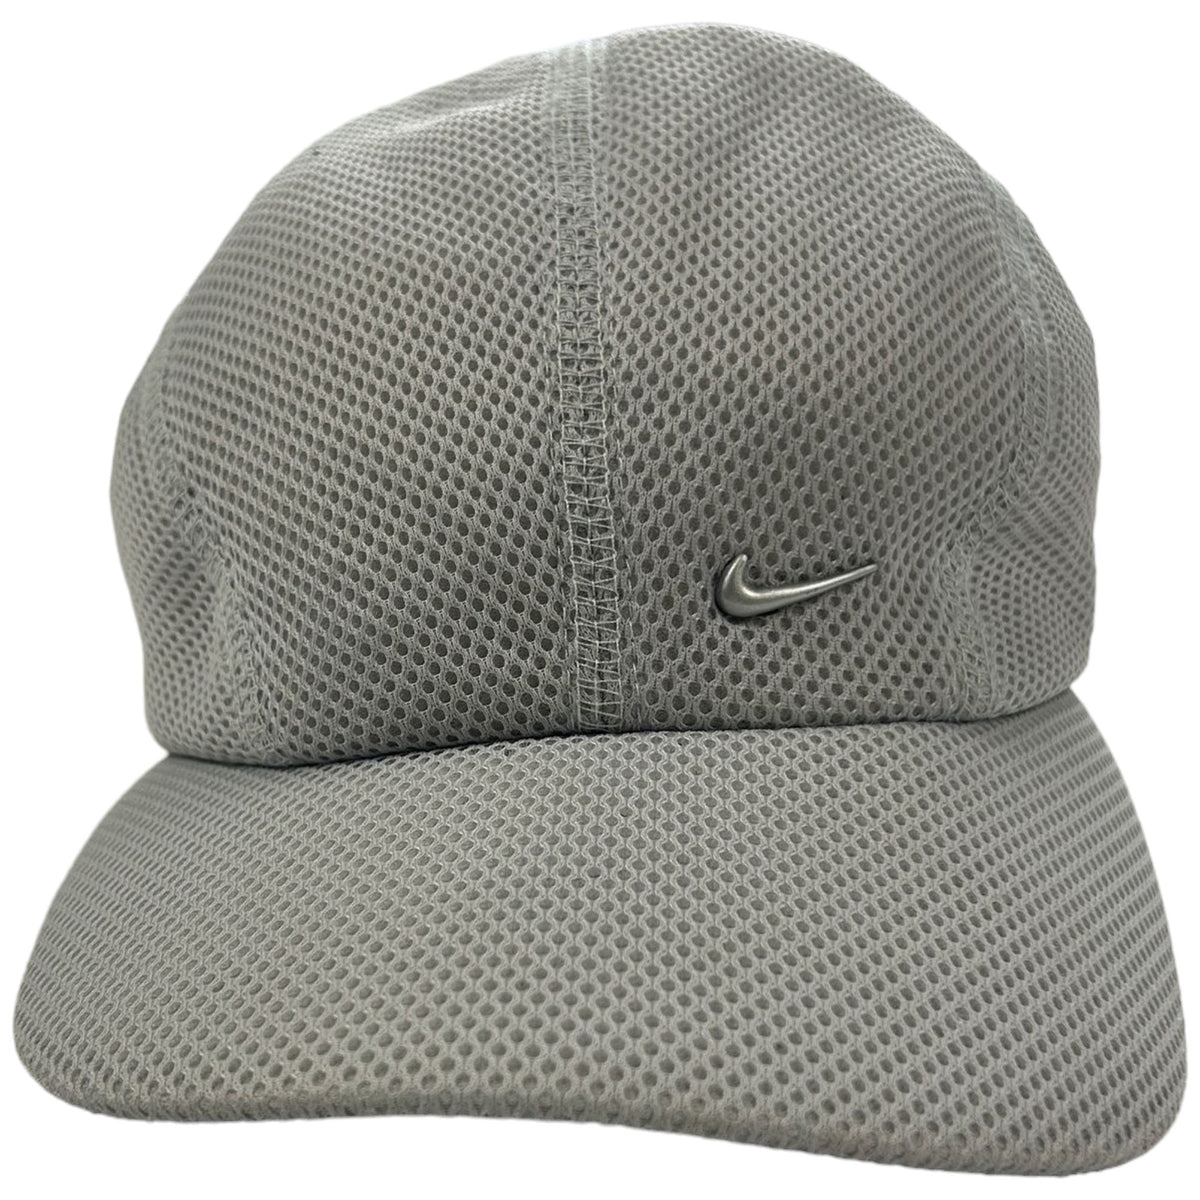 Vintage Nike Mesh Hat